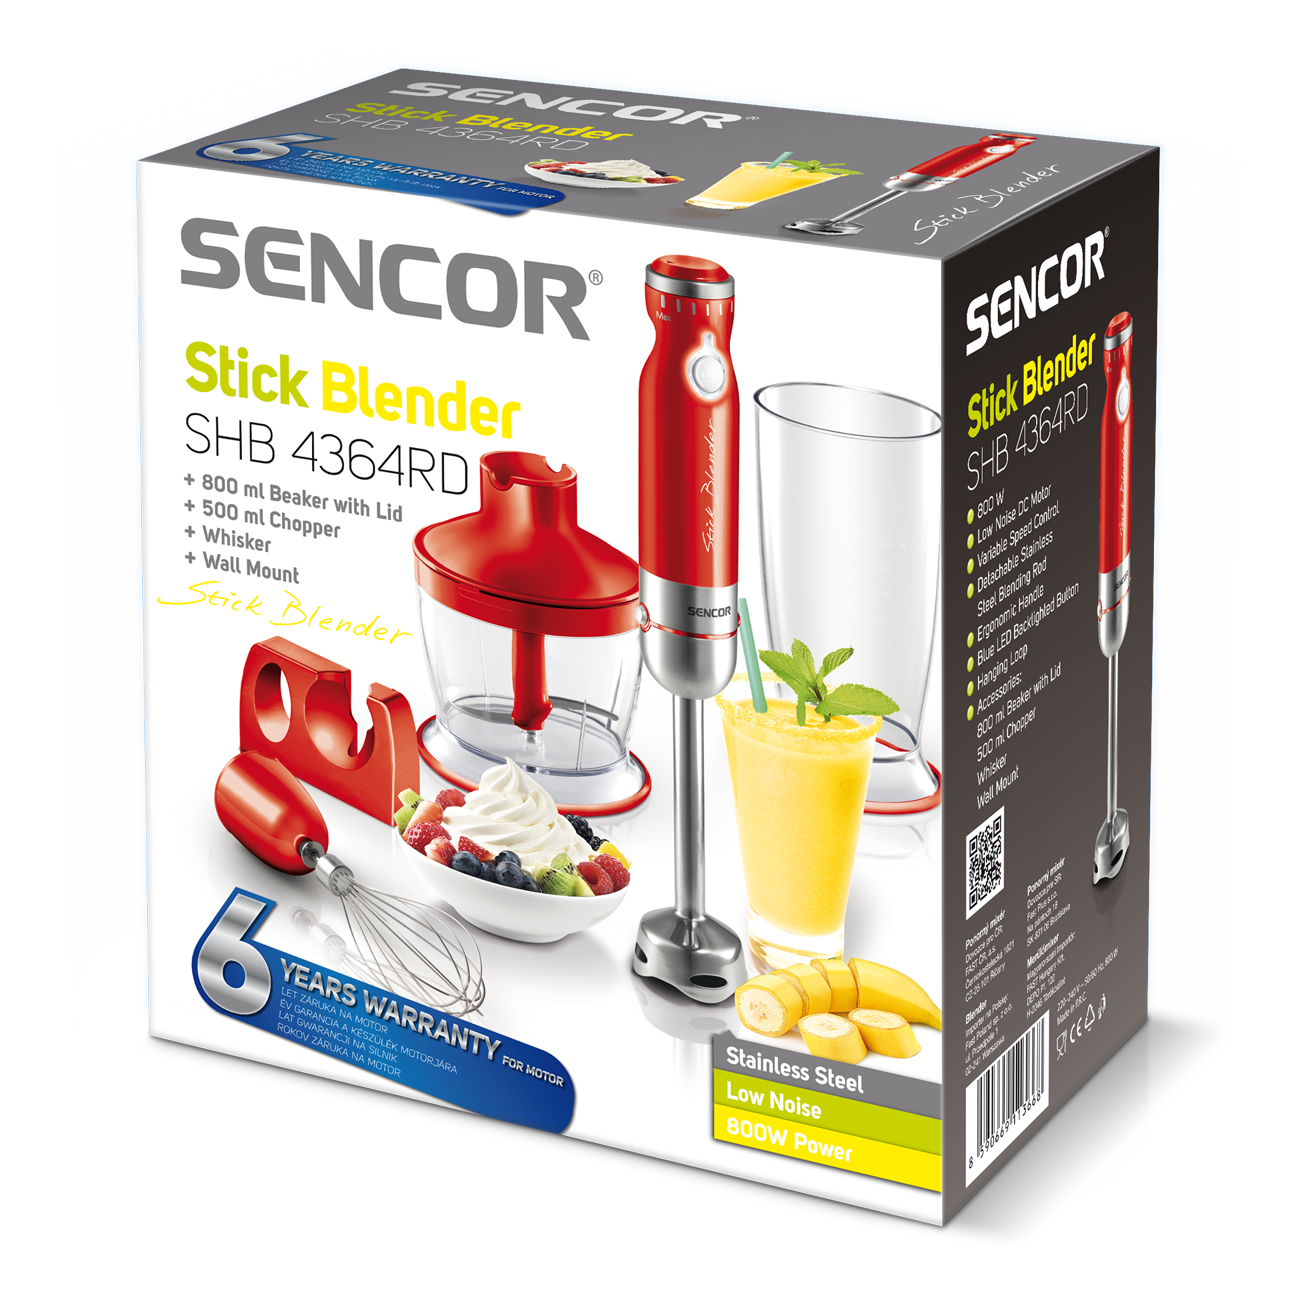 SENCOR Hand Blender SHB4364RD